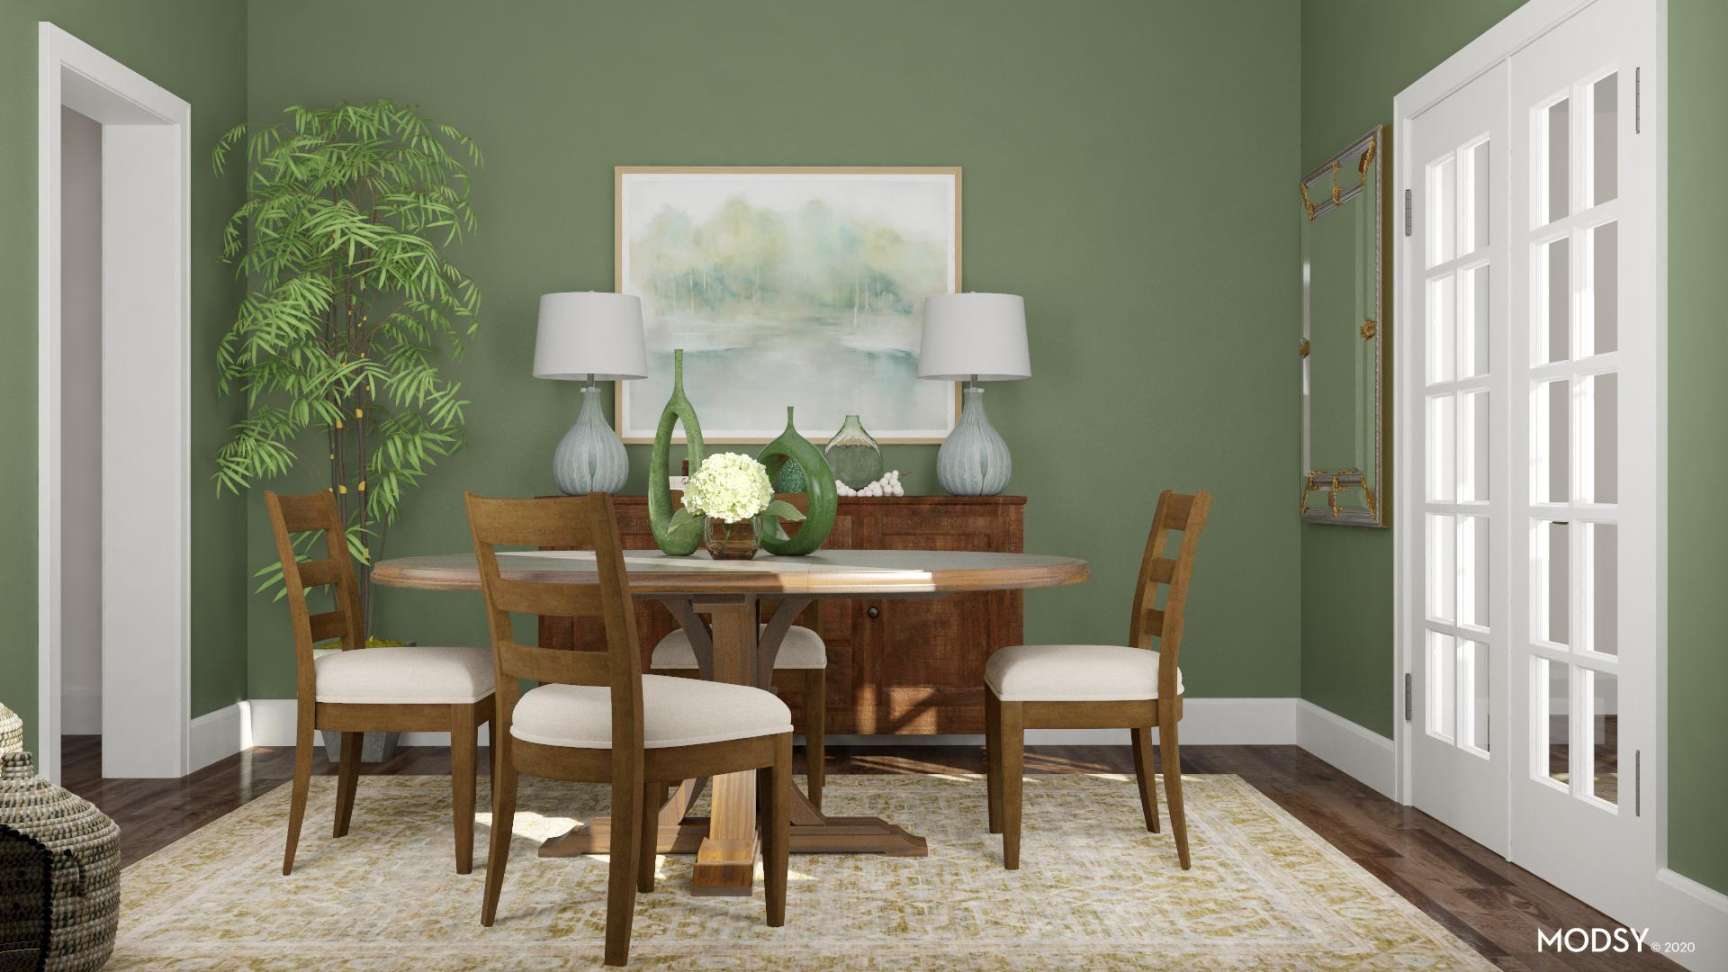 Green Dining Room - Dining Room Design Ideas & Photos